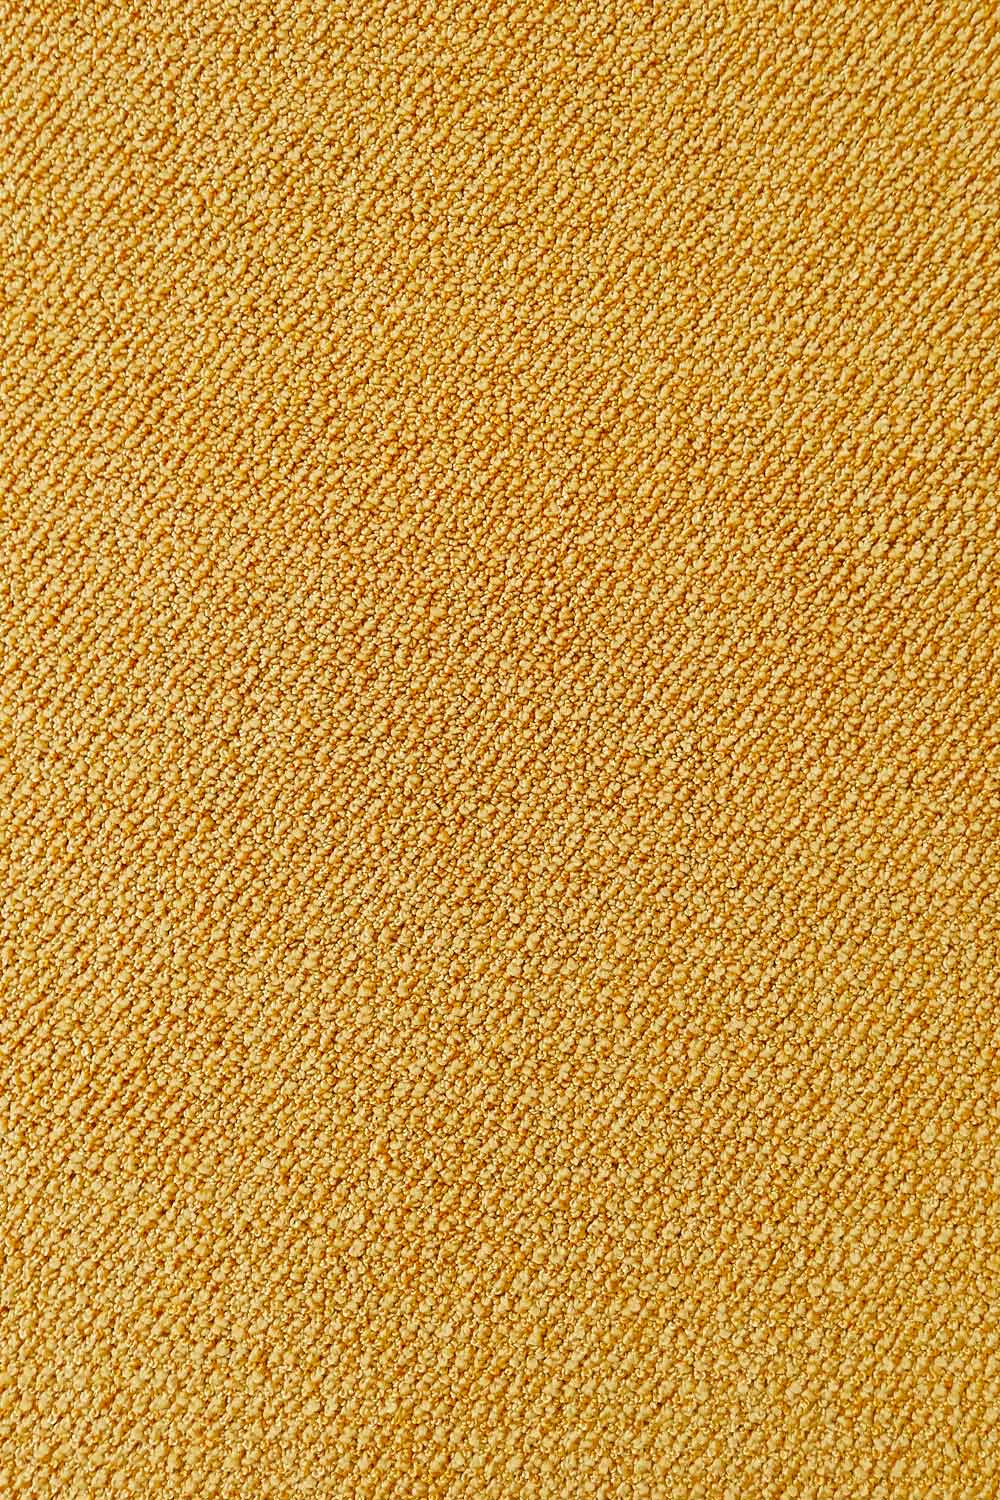 Metrážový koberec Corvino 51 500 cm